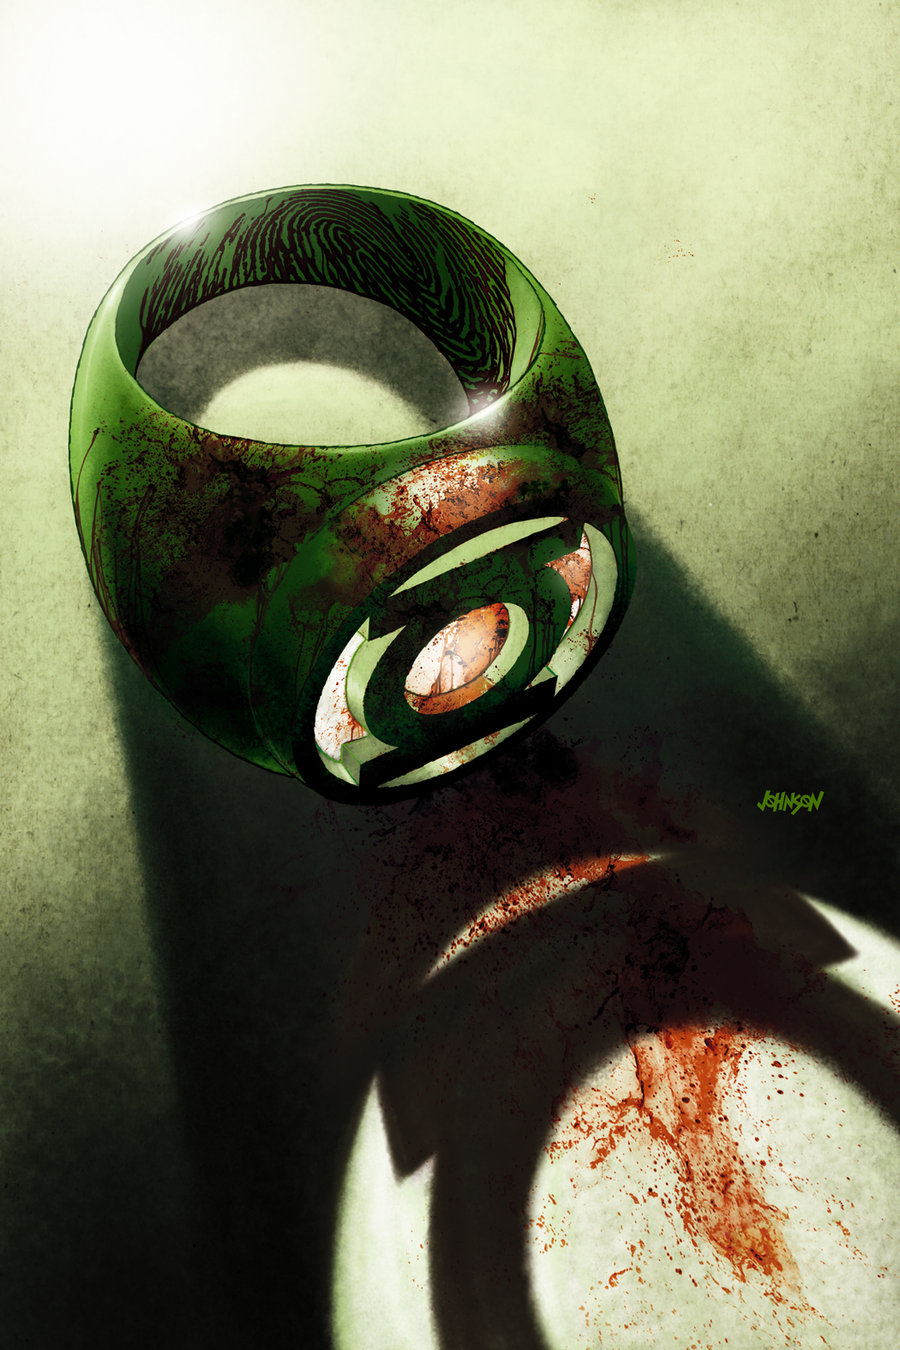 Green Lantern Symbol Stainless Steel Ring-Size 10 - Walmart.com